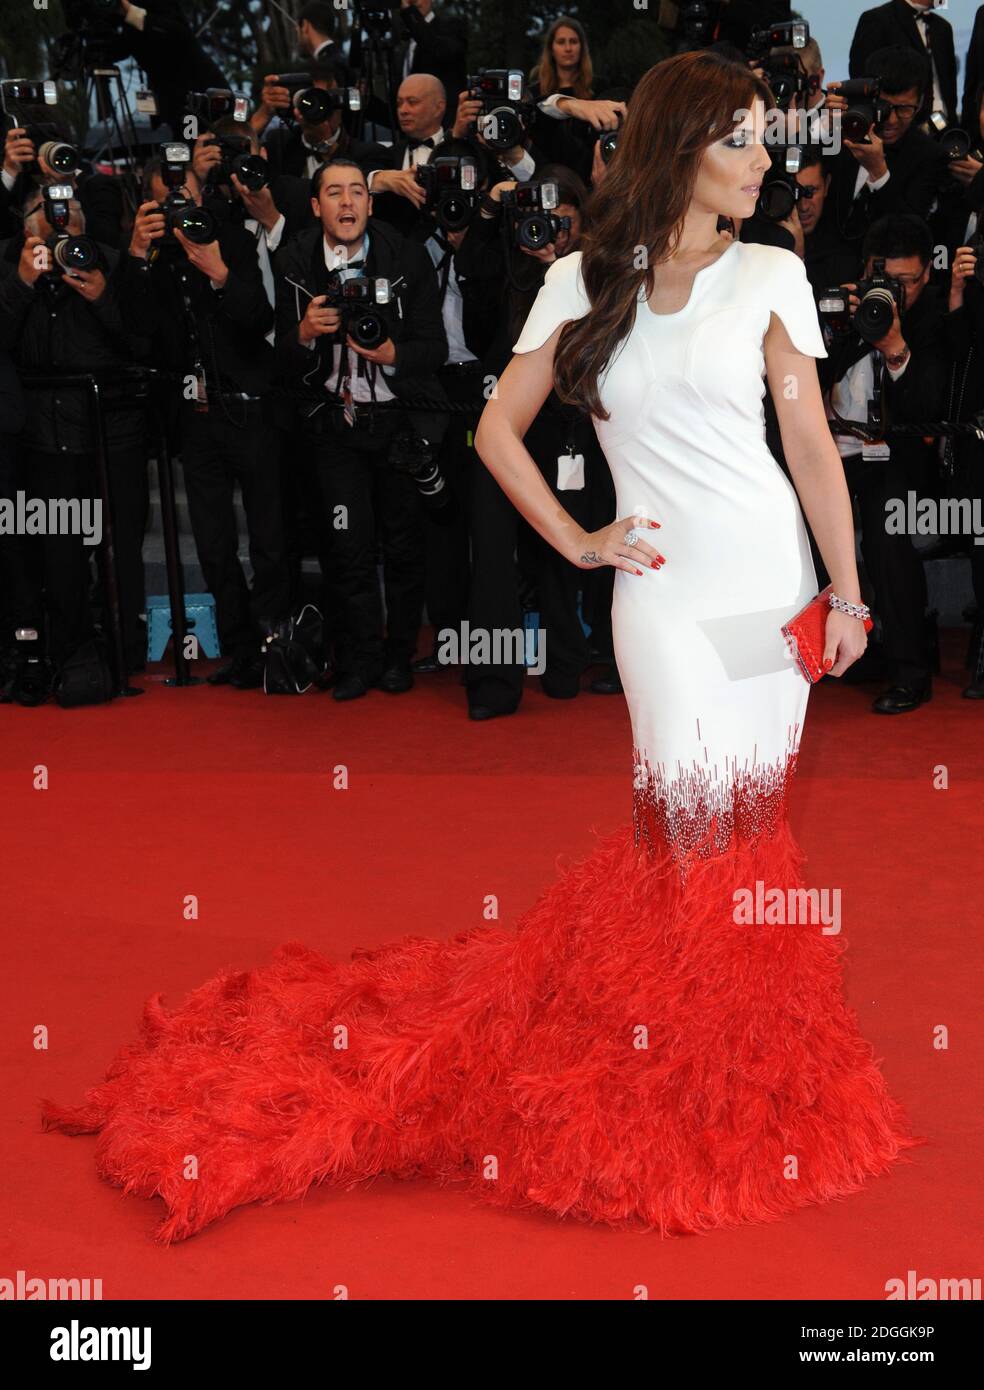 Cheryl Cole arriva al Gala Screening di Amour, tenuto al Palais de Festival, parte del 65° Festival di Cannes. Foto Stock